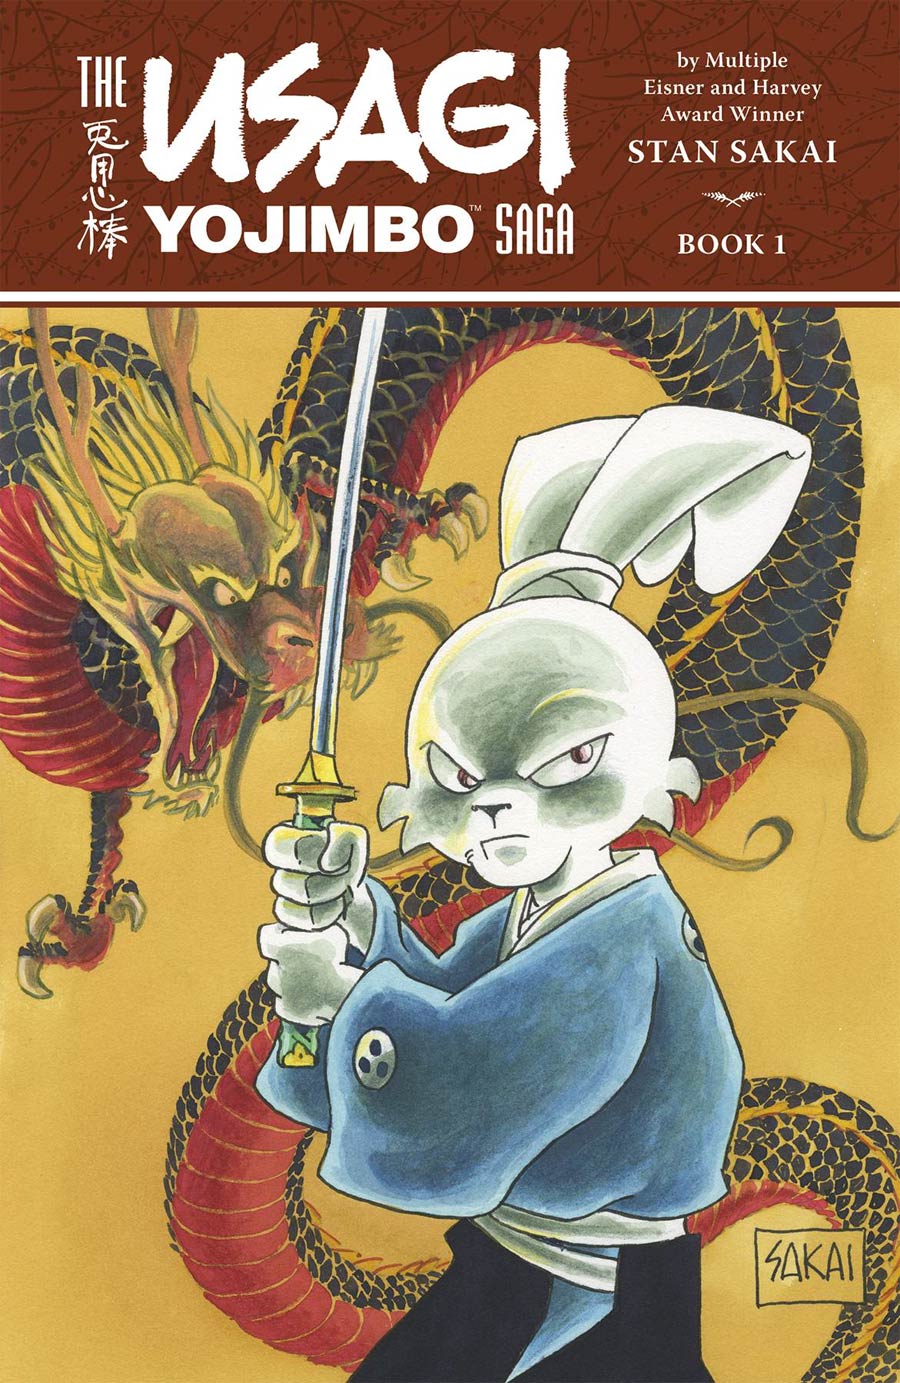 Usagi Yojimbo Saga Vol 1 TP 2nd Edition